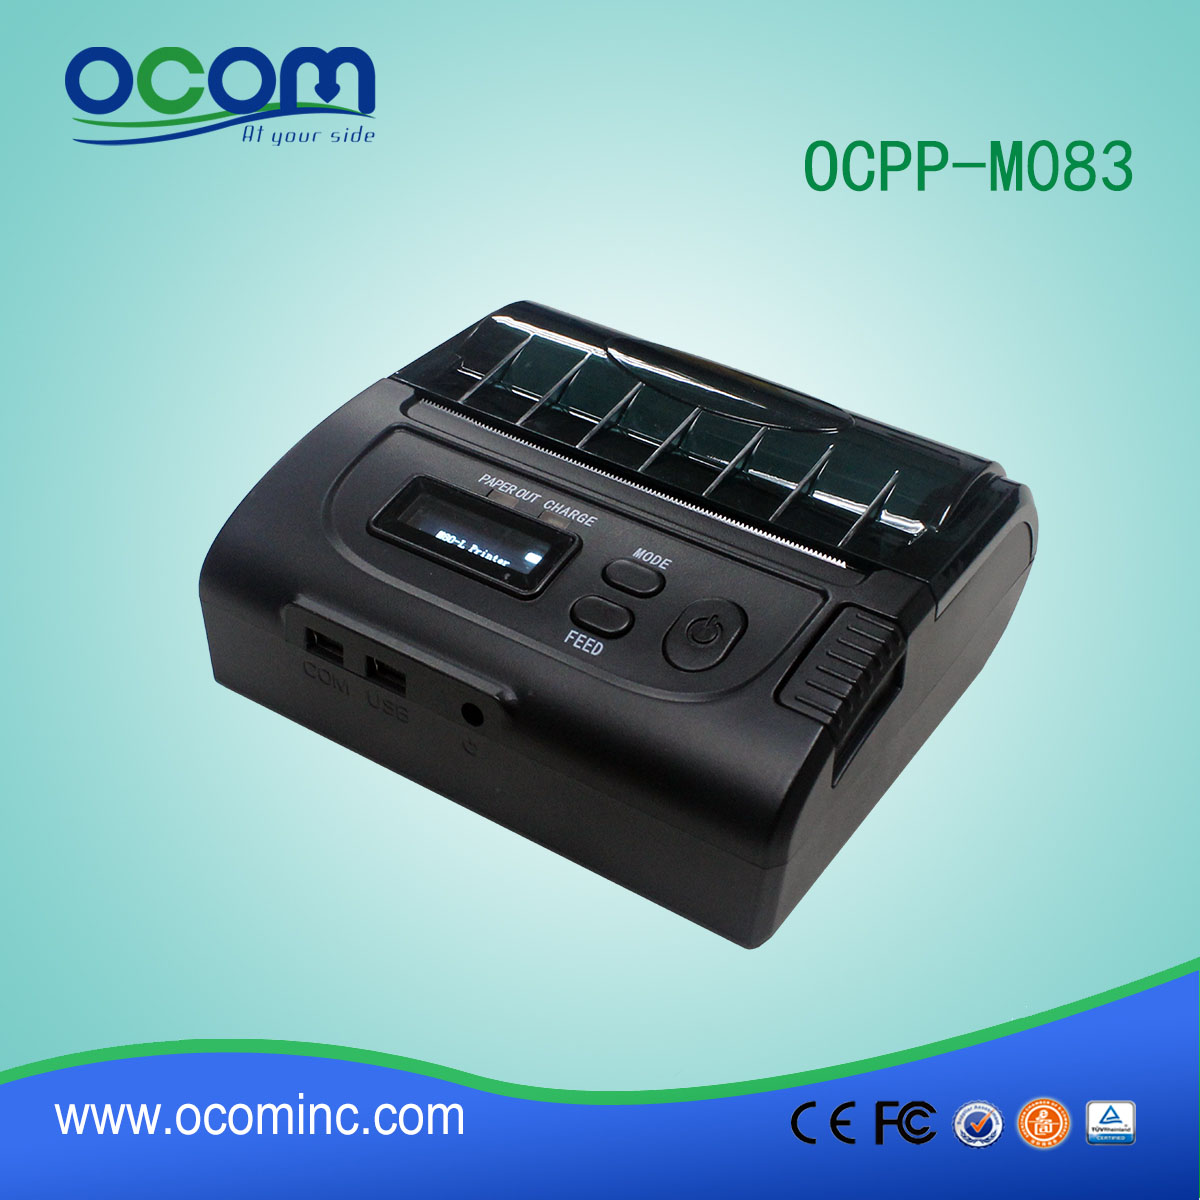 واي فاي المحمولة طابعة حرارية صغيرة للتطبيق نقاط البيع (OCPP-M083)